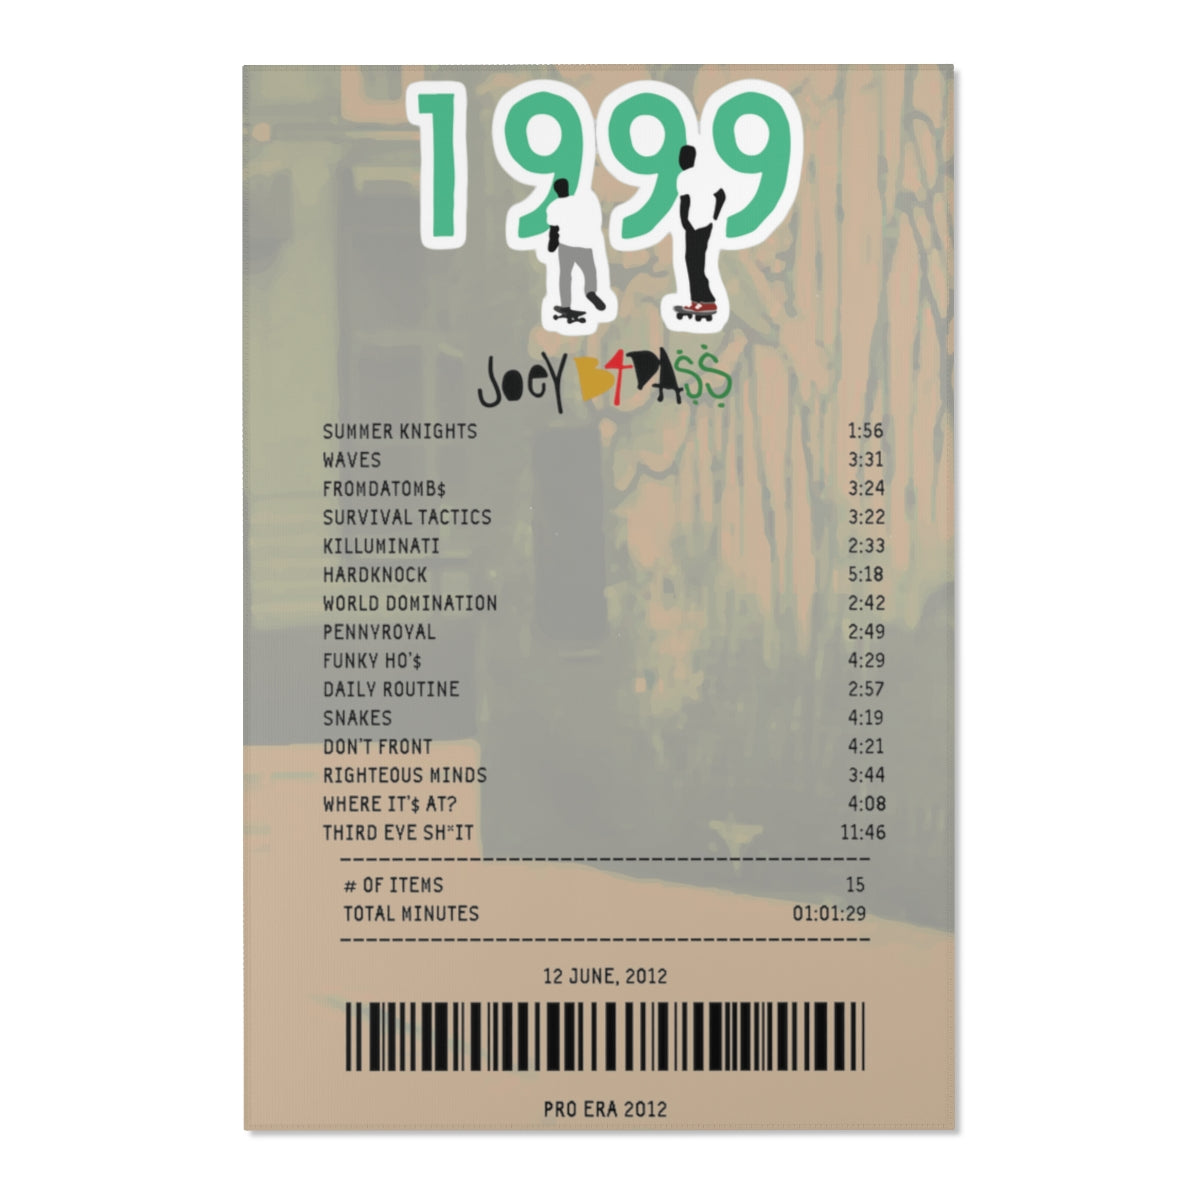 1999 - Joey Bada$$ [Rug]